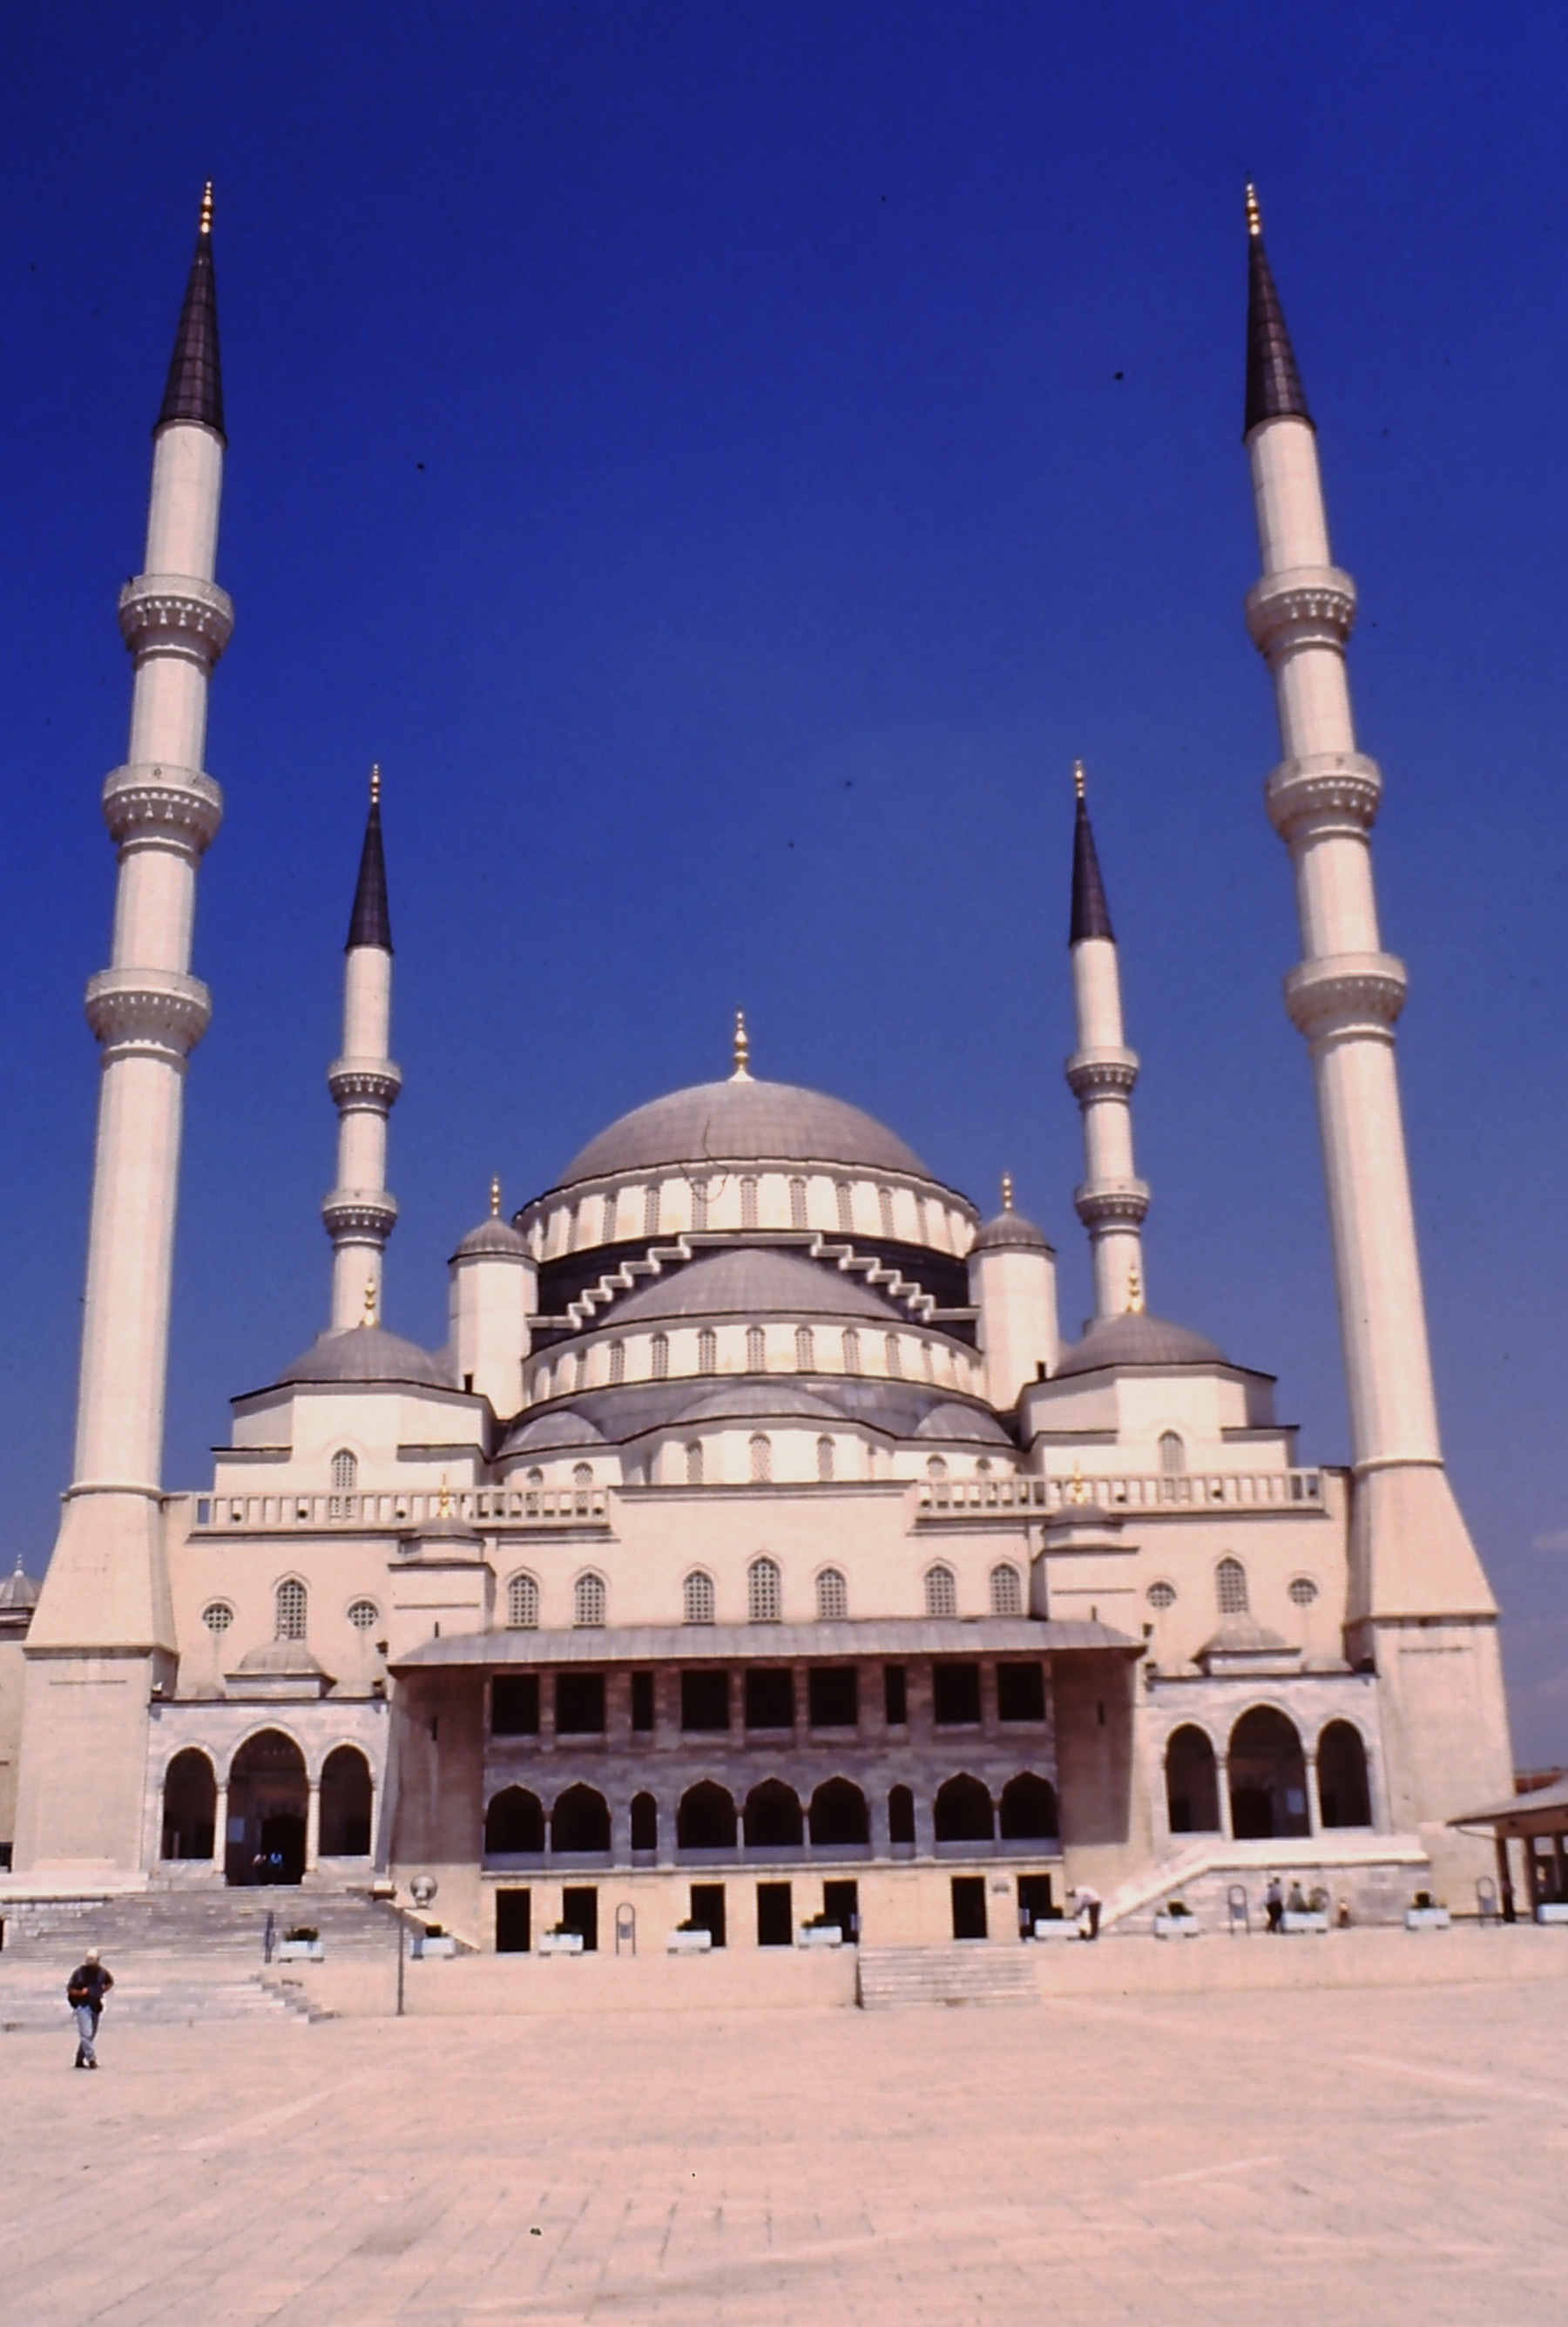 אנקרה - המסגד החדש - חוץ